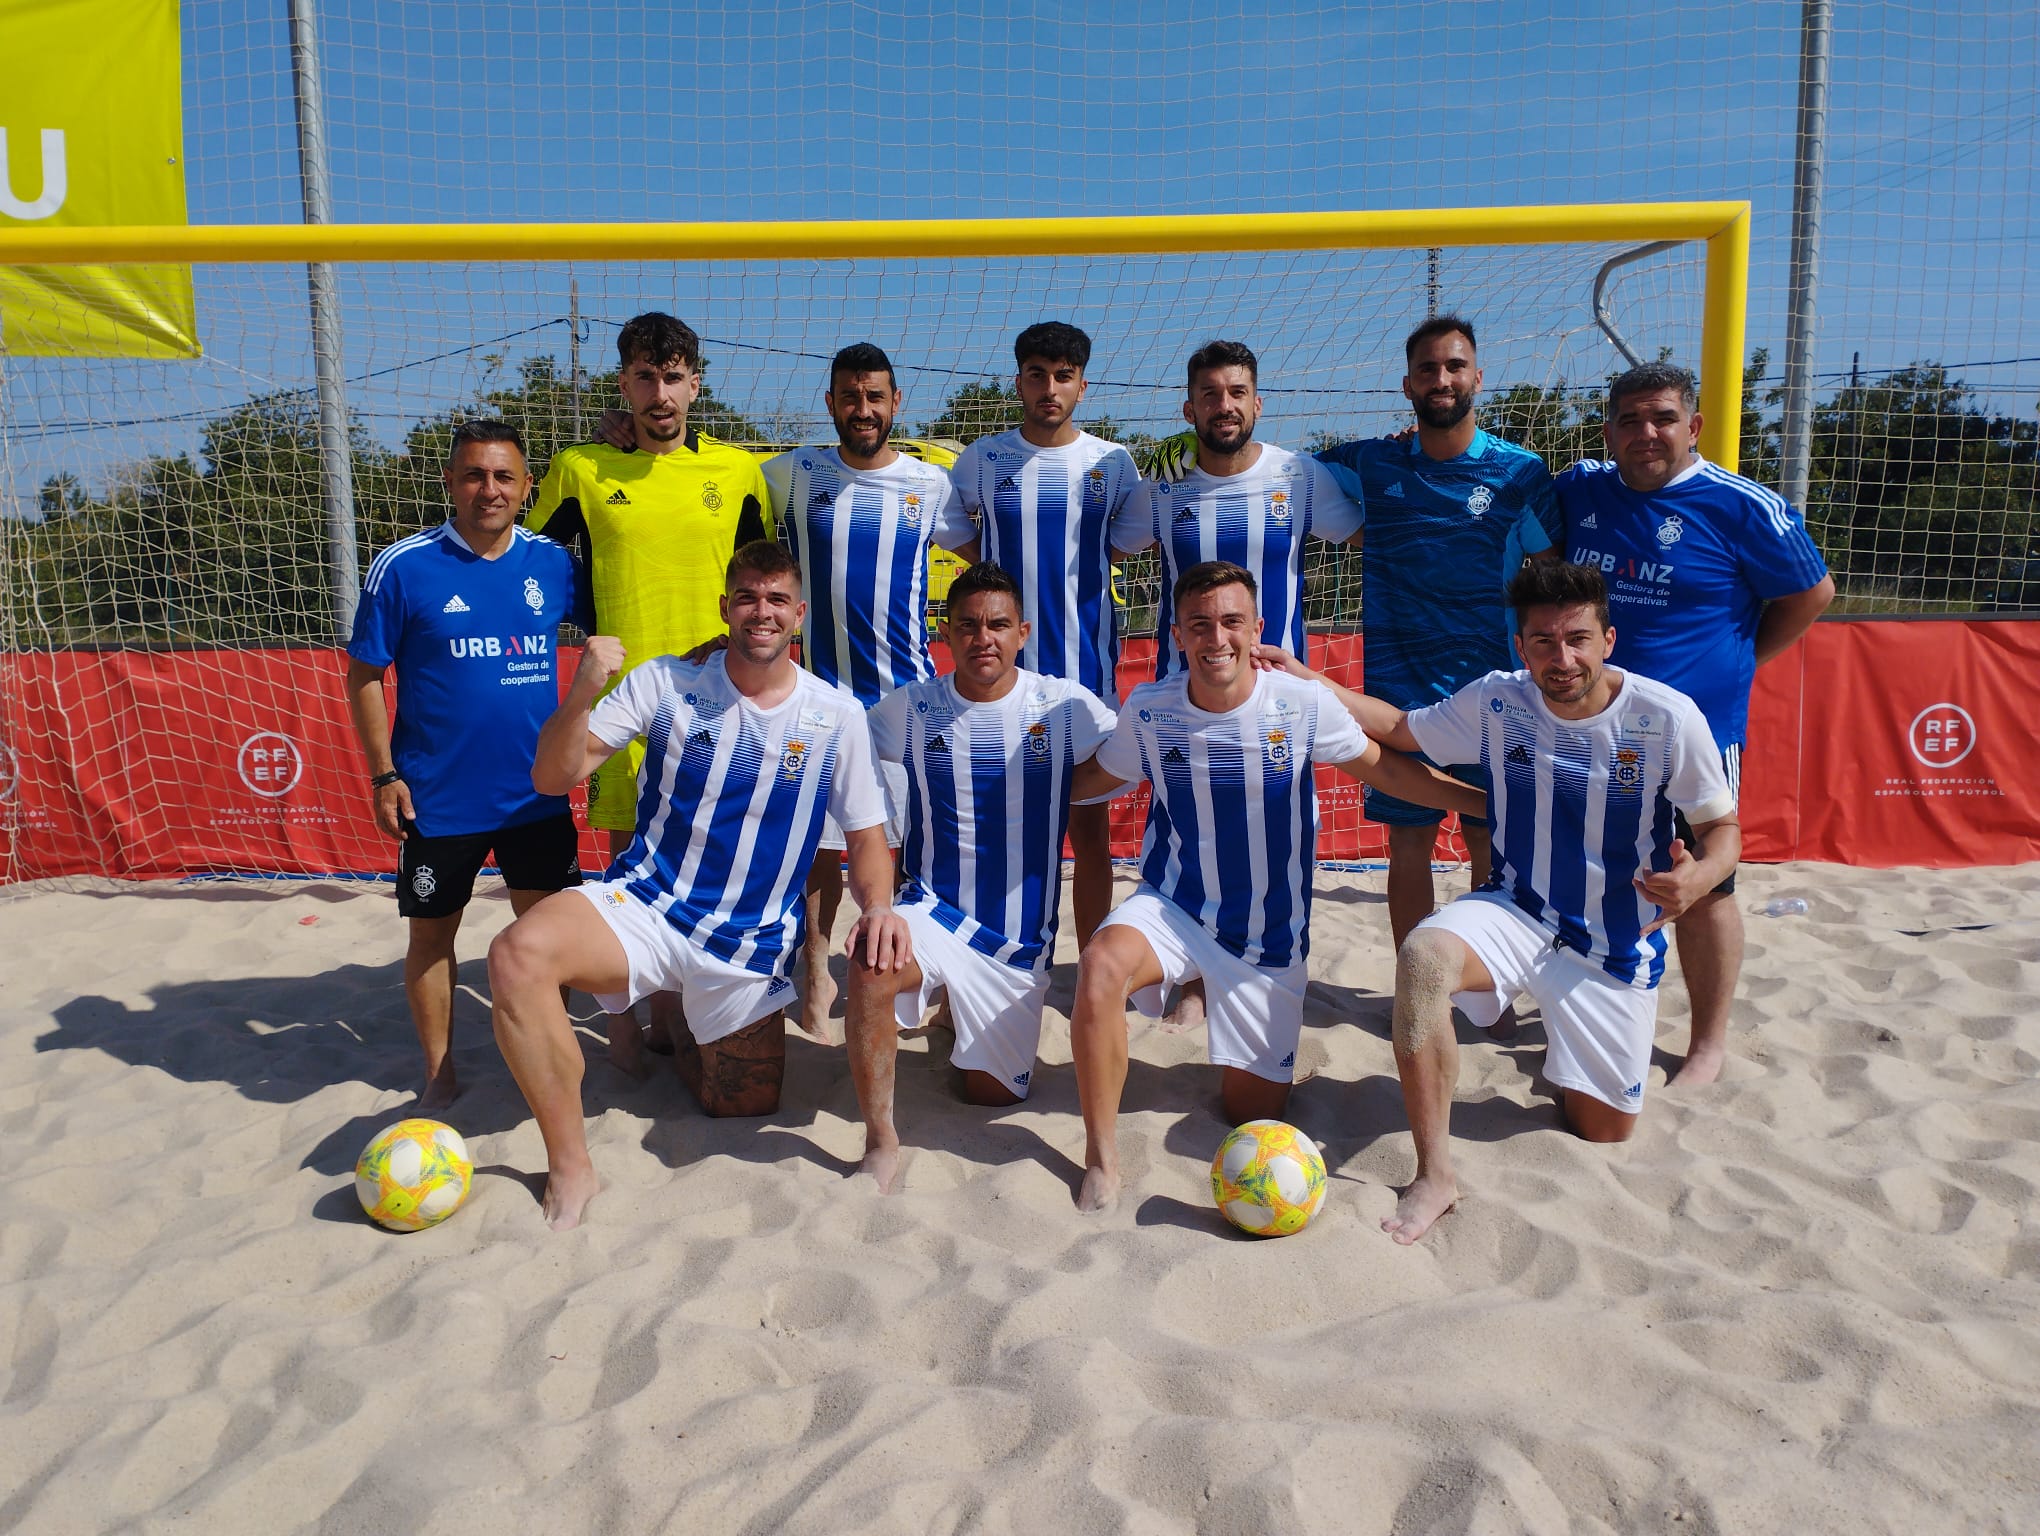 Pleno de victorias del Recreativo de Huelva de Fútbol Playa